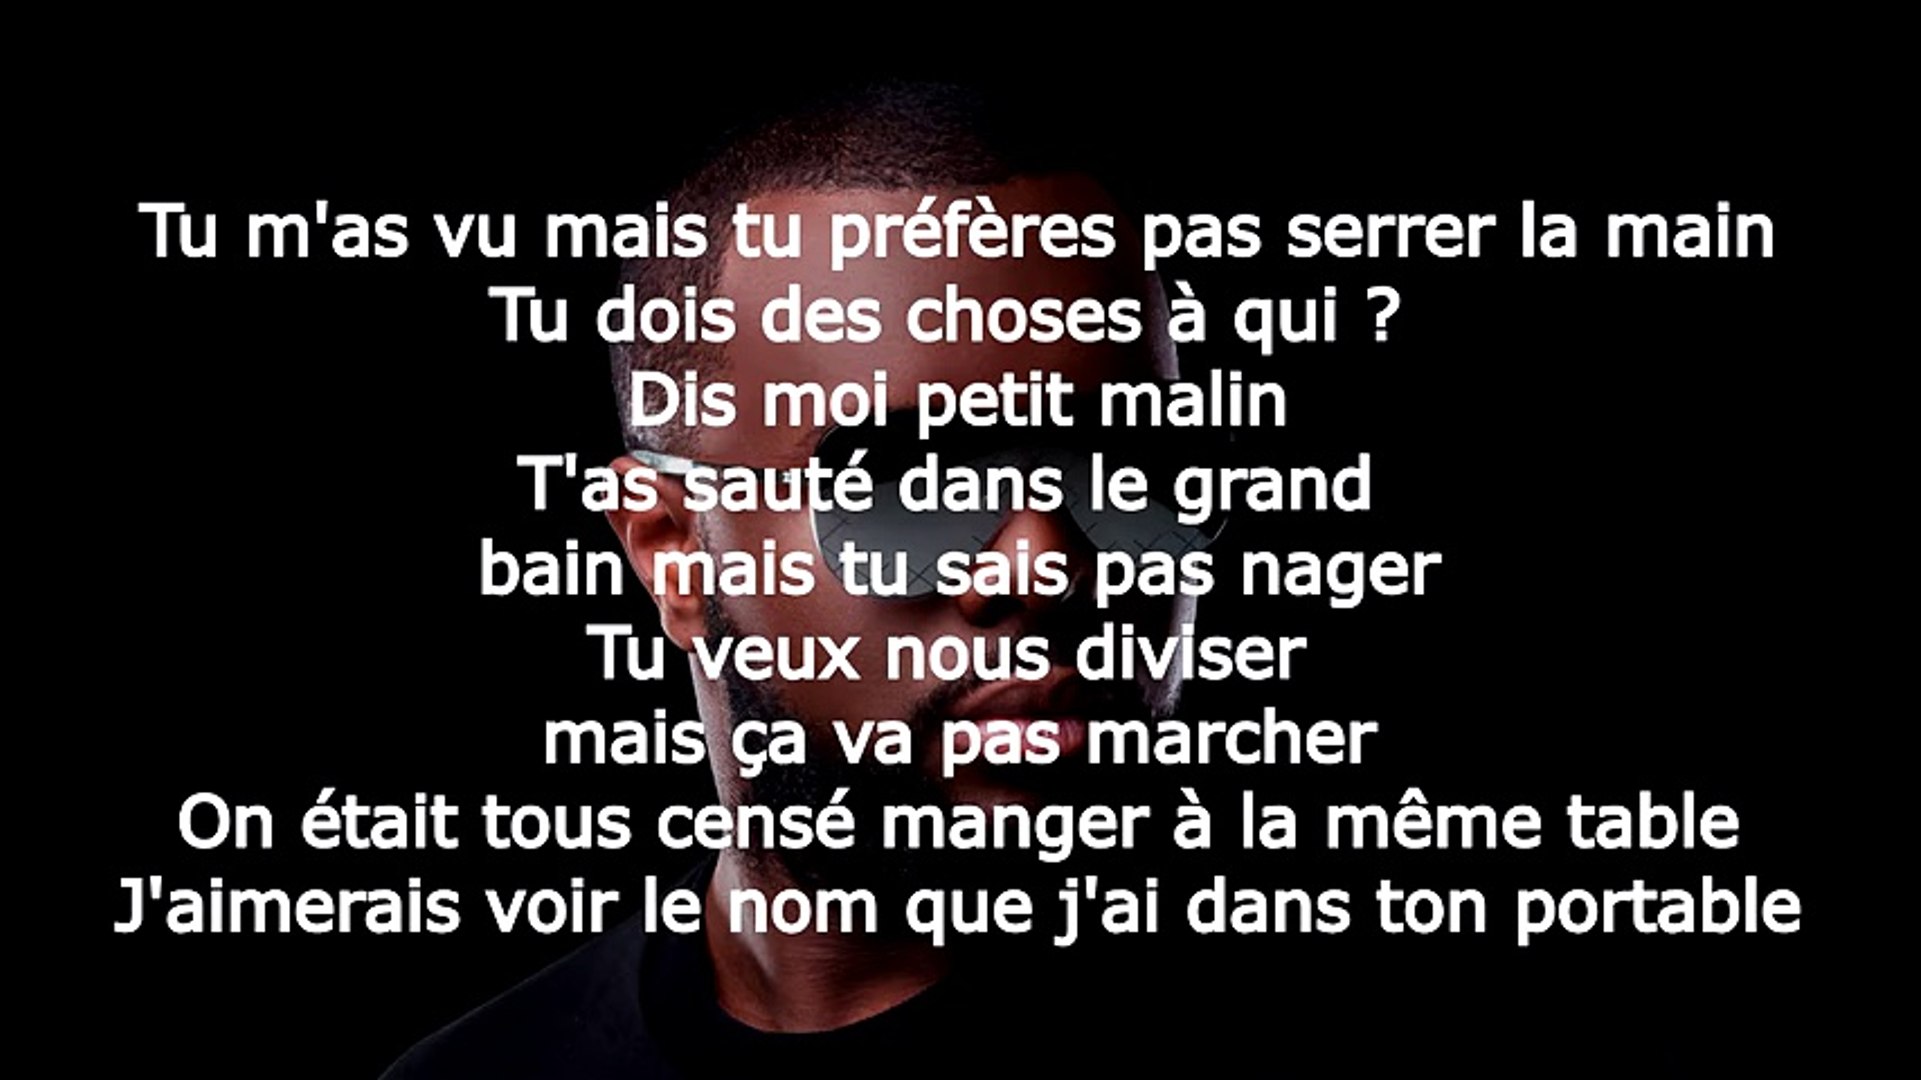 Maitre Gims - Marabout (Paroles) - Vidéo Dailymotion